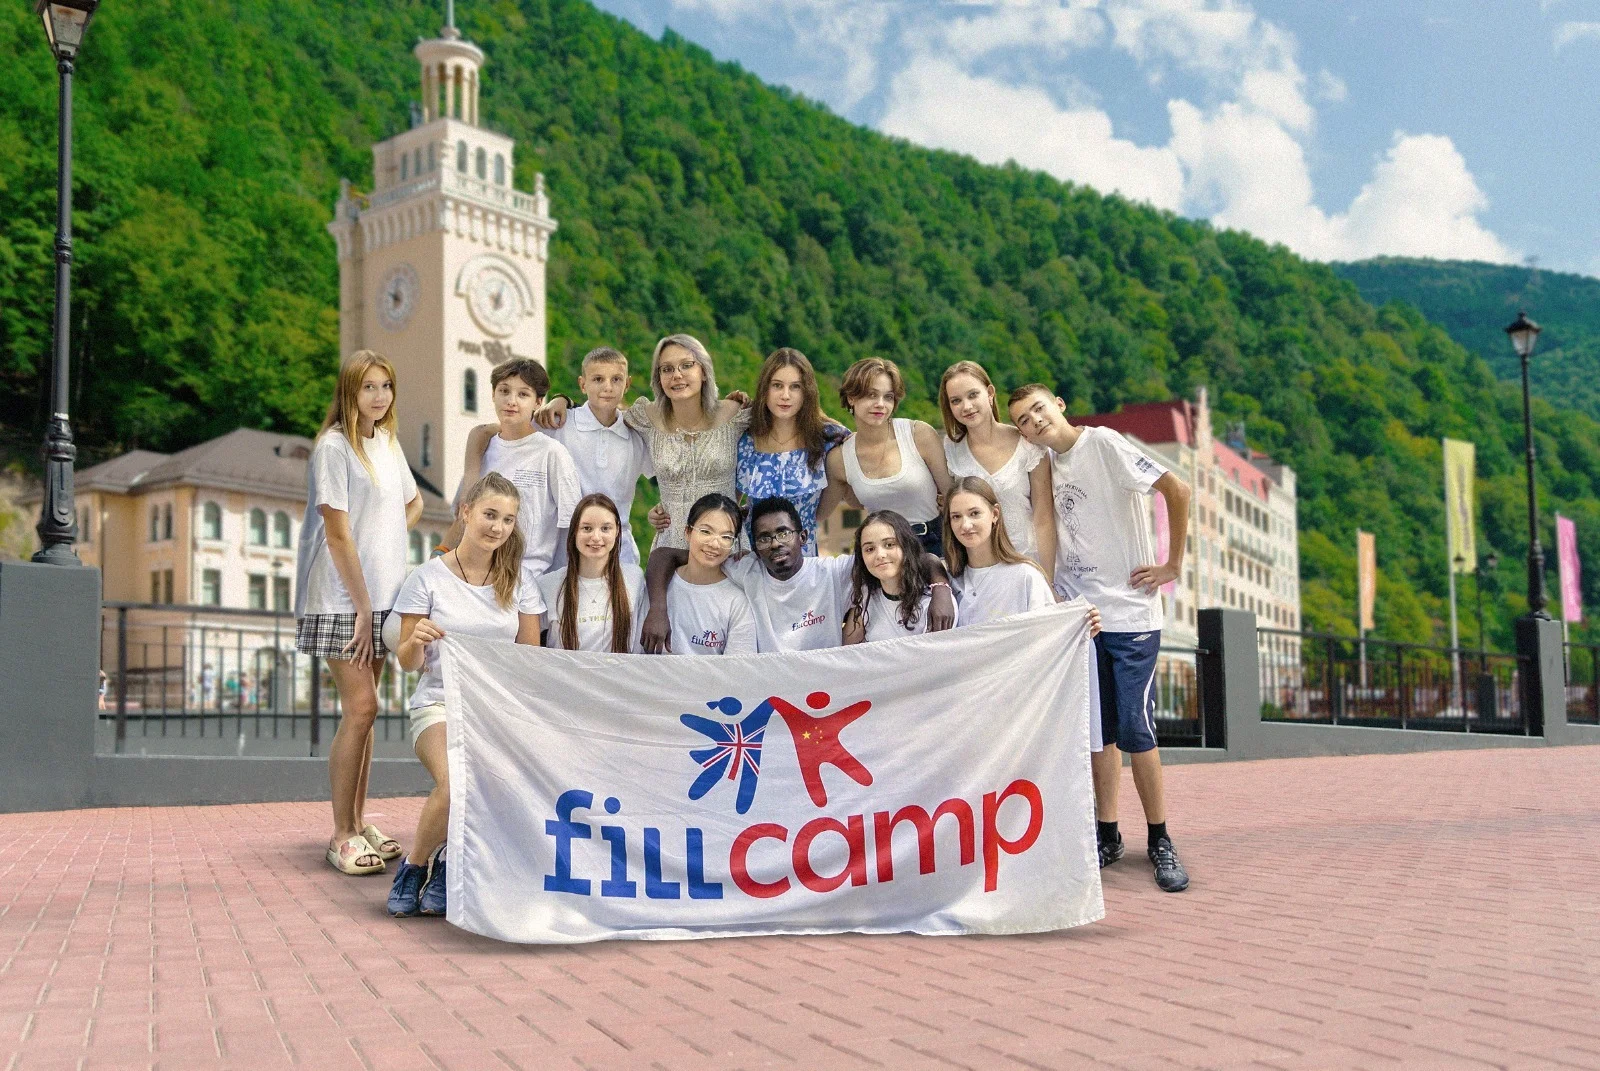 лагерь "FillCamp".